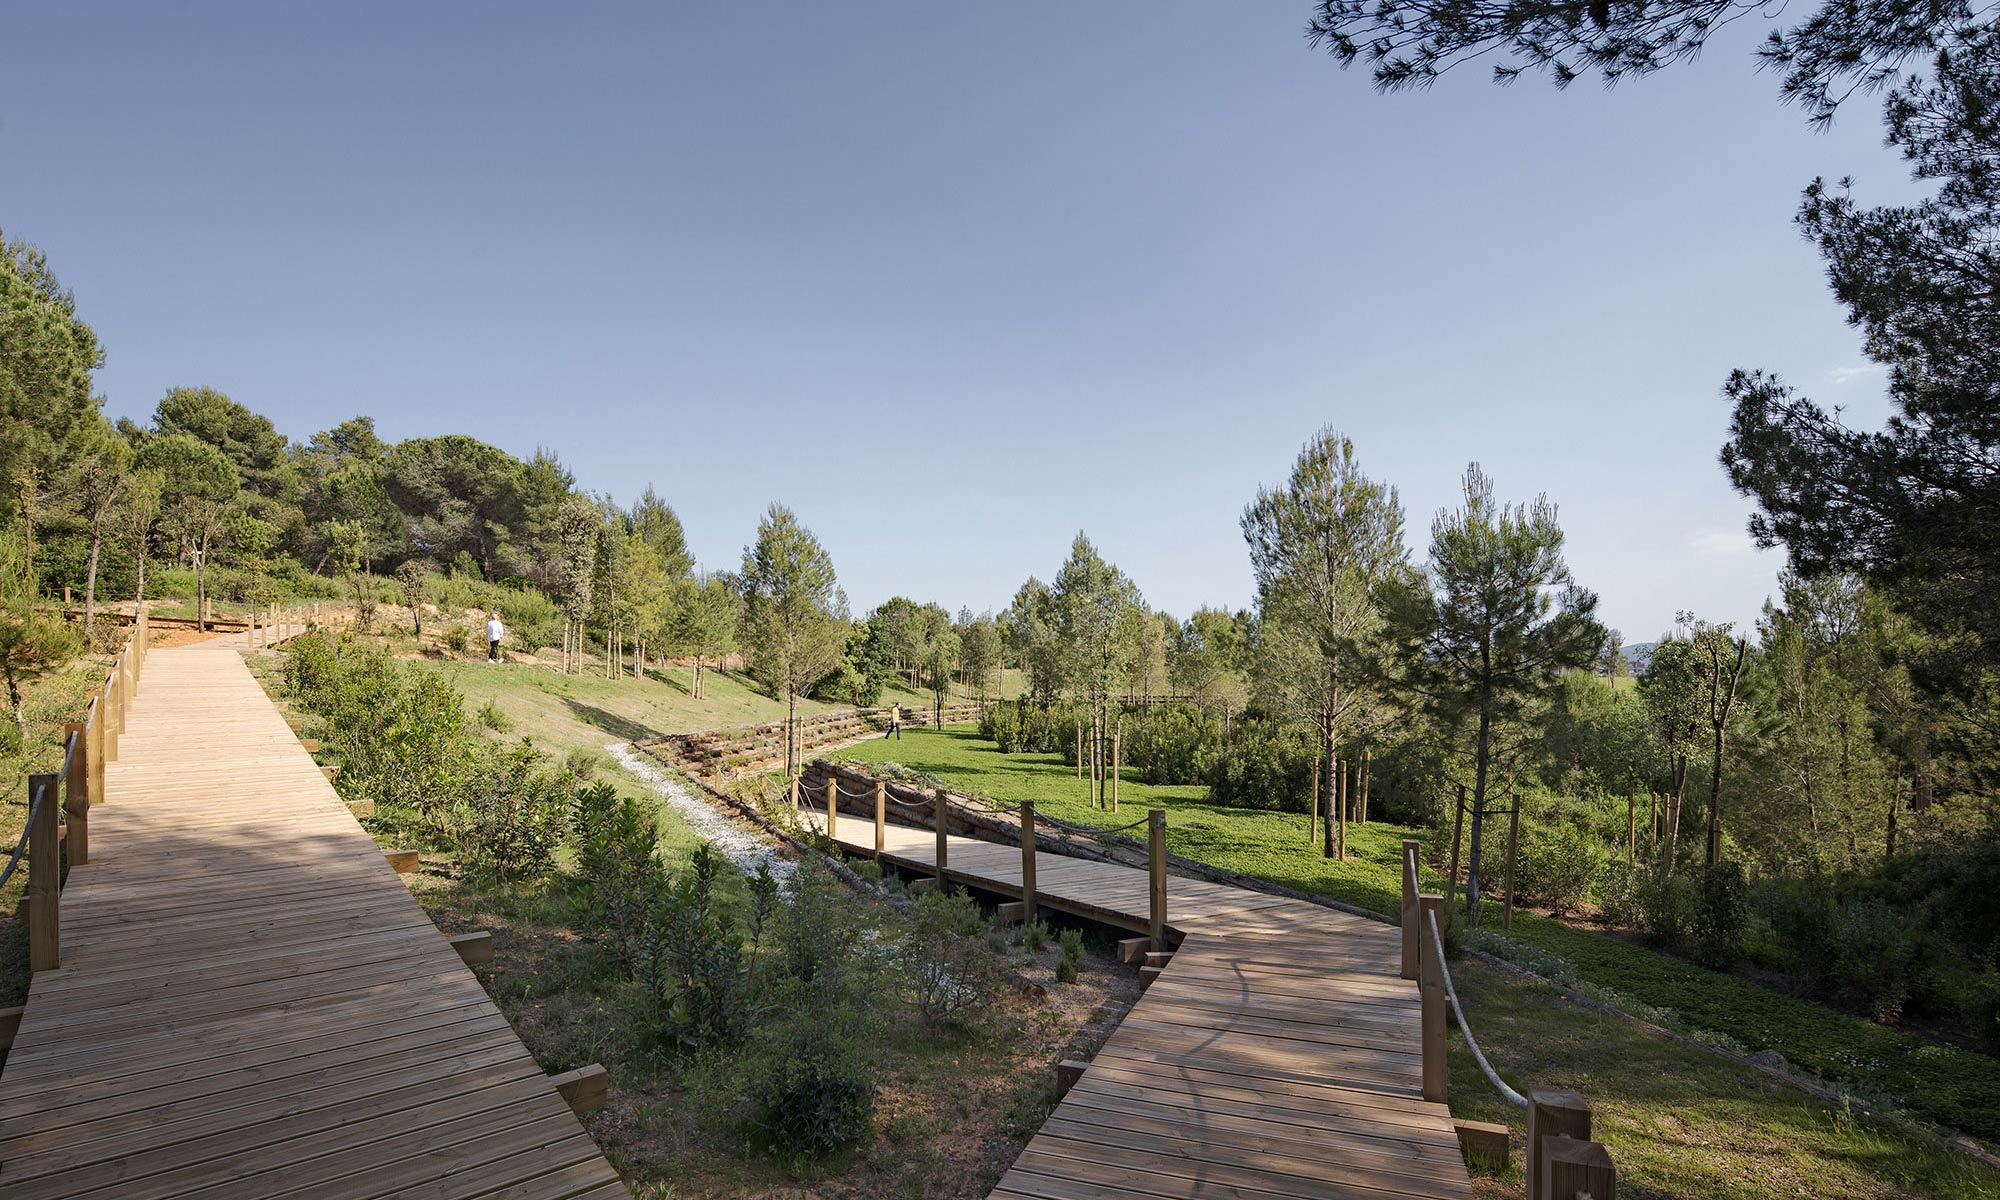 Roques Blanques begraafplaats in het natuurpark Collserola bij Barcelona. Battle i Roig ontwierp in het zuidelijke deel een groen terras. Daarin worden ‘organische urnen’ geplaatst. Die vergaan uiteindelijk om plaats te maken voor nieuwe plantensoorten. 